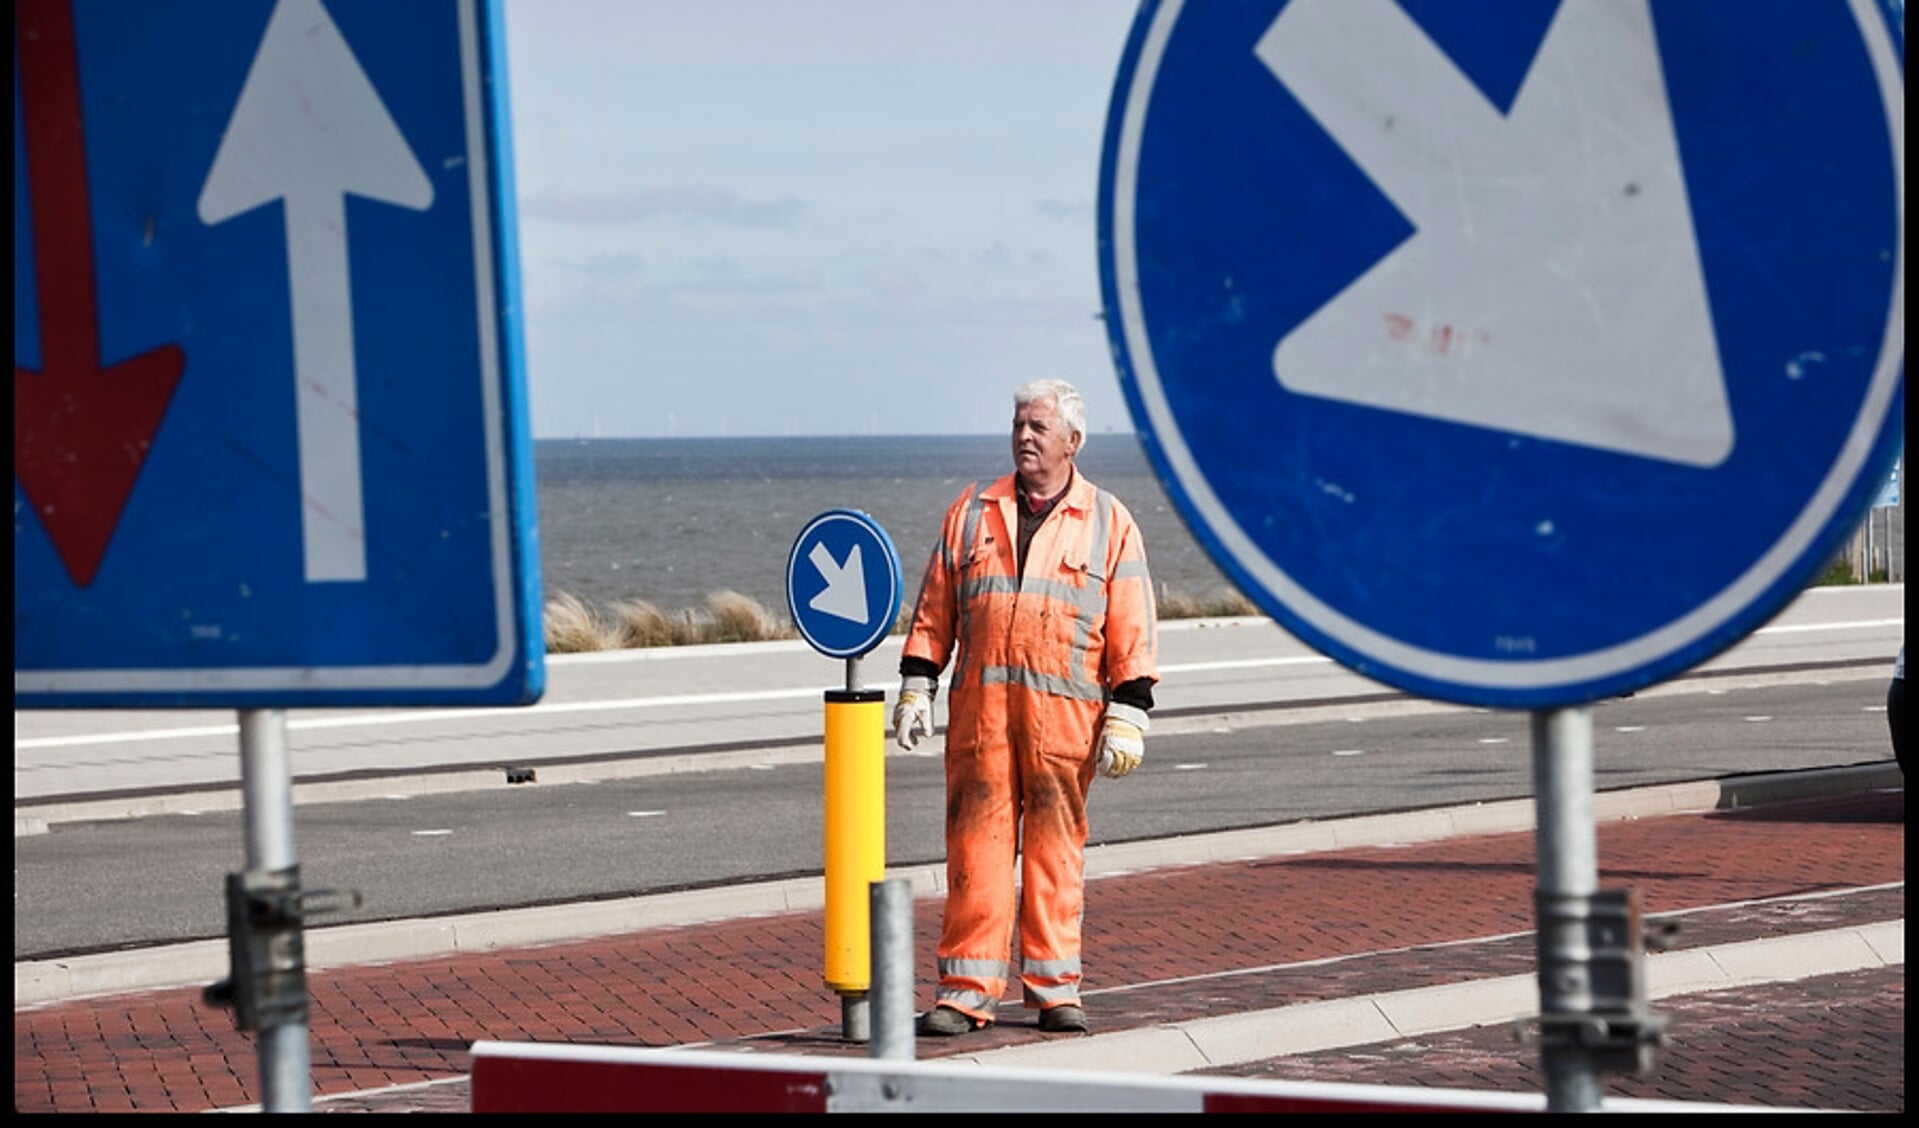 Ruim 10 miljoen voor lokale verkeersveiligheids- en fietsprojecten Noord-Holland